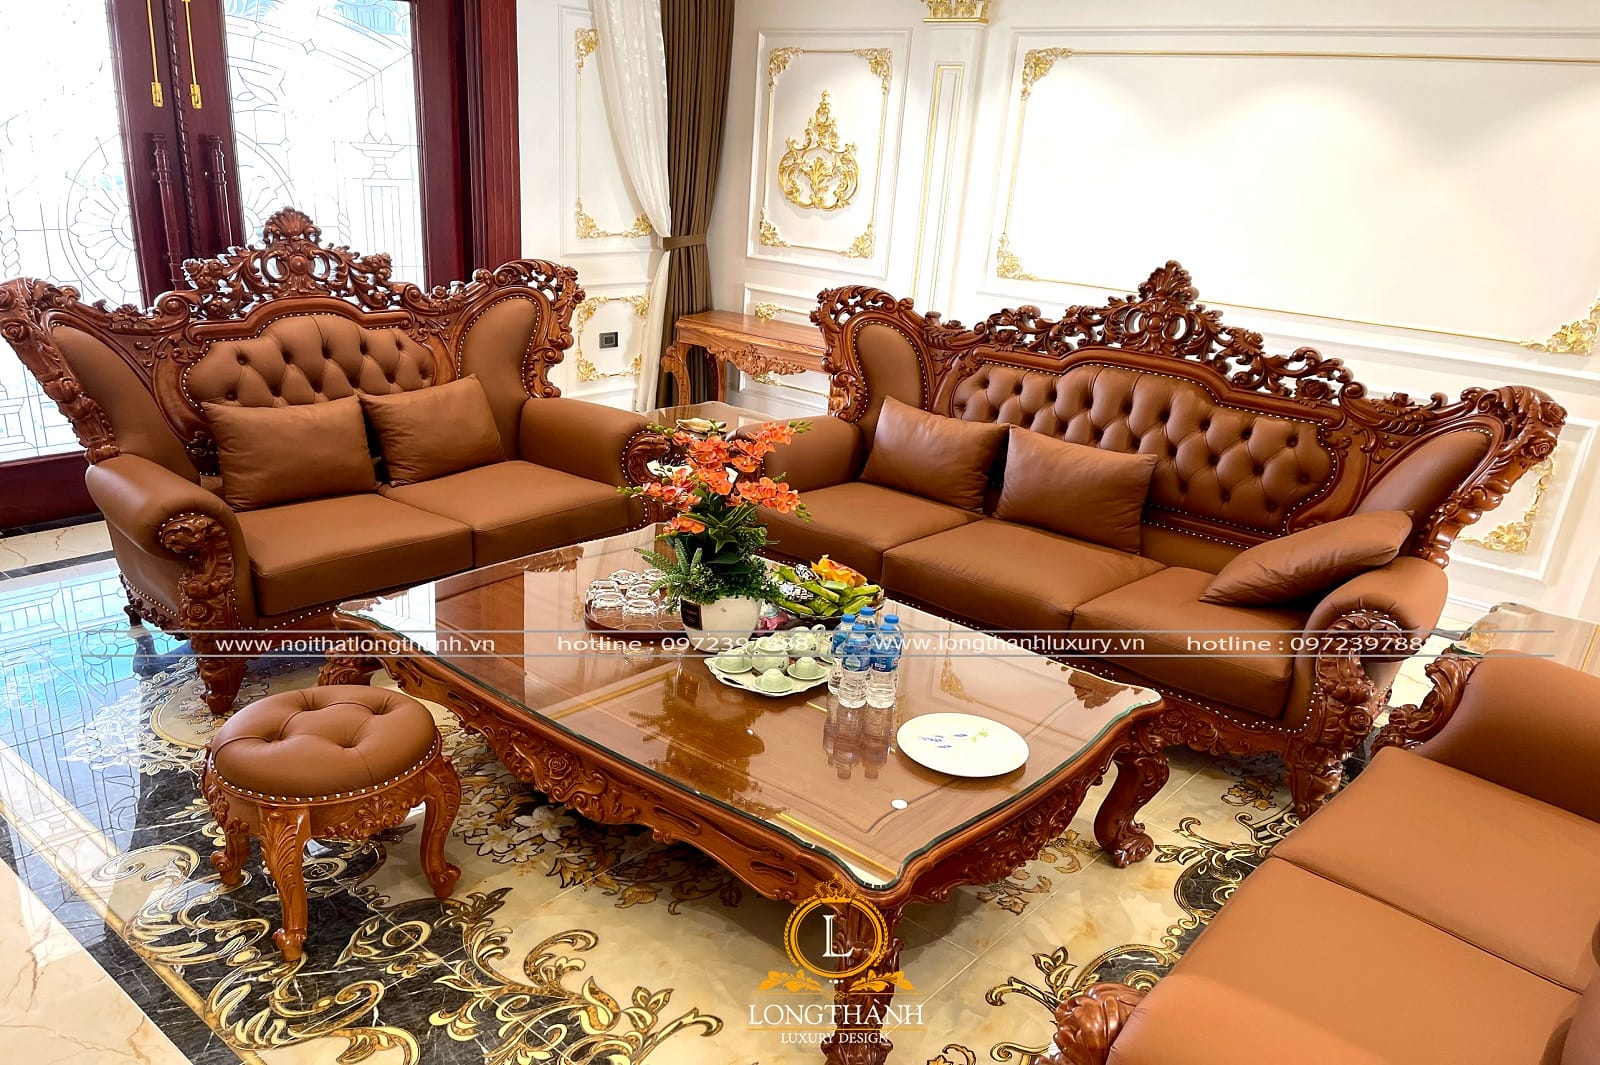 Tổng hợp các mẫu sofa tân cổ điển đã bàn giao cho khách hàng